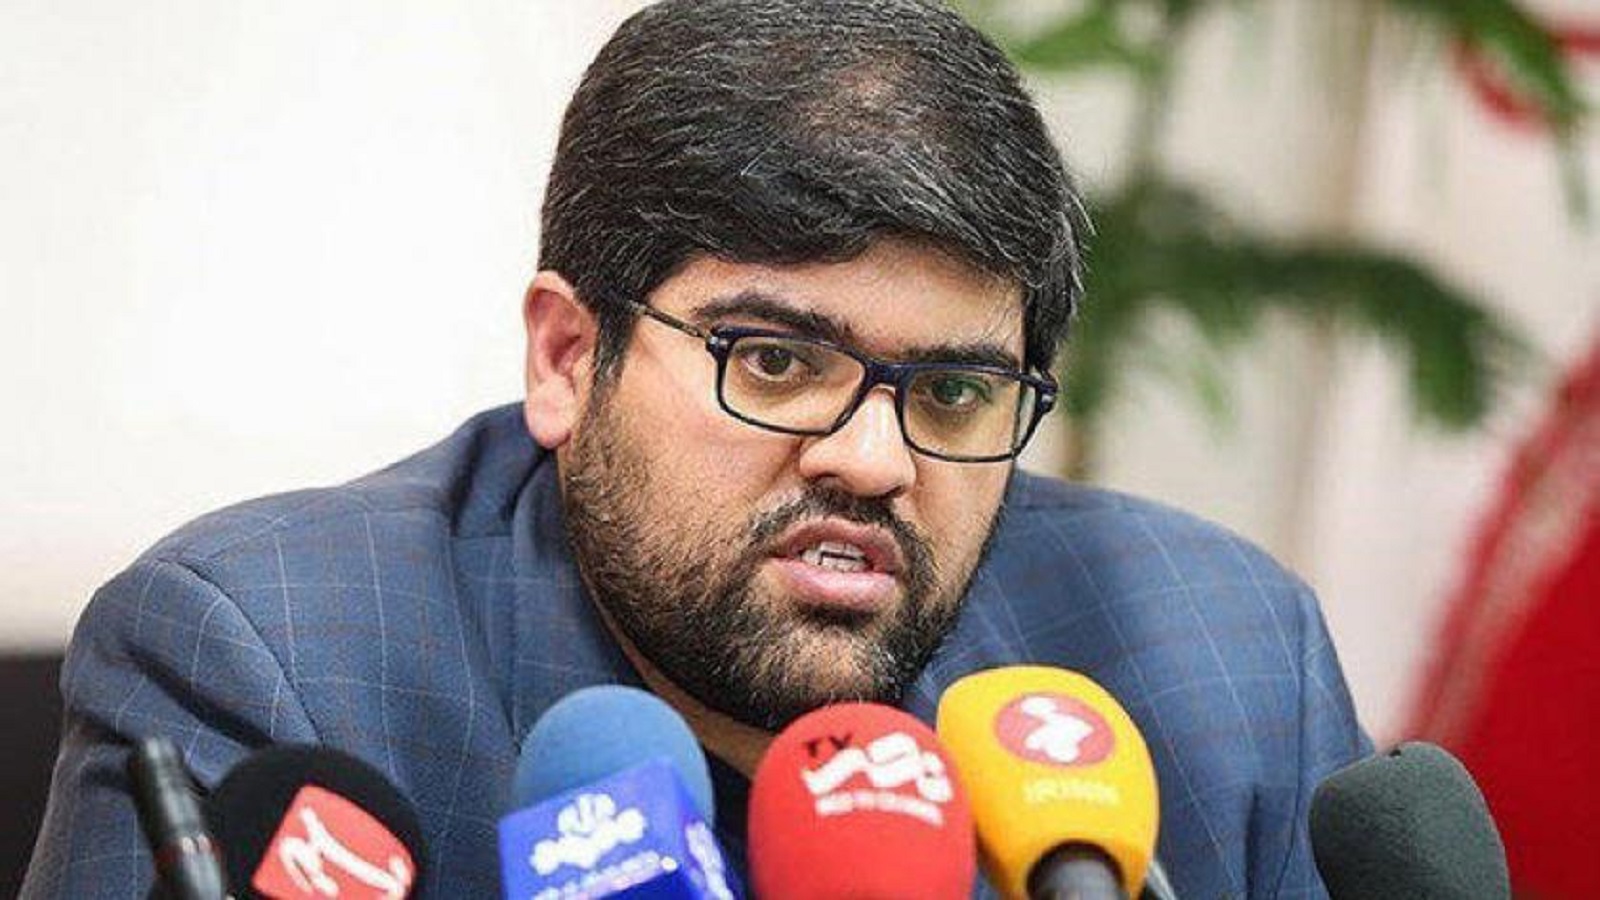 التلفزيون الايراني يقيل مسؤولاً "أهان السنّة"